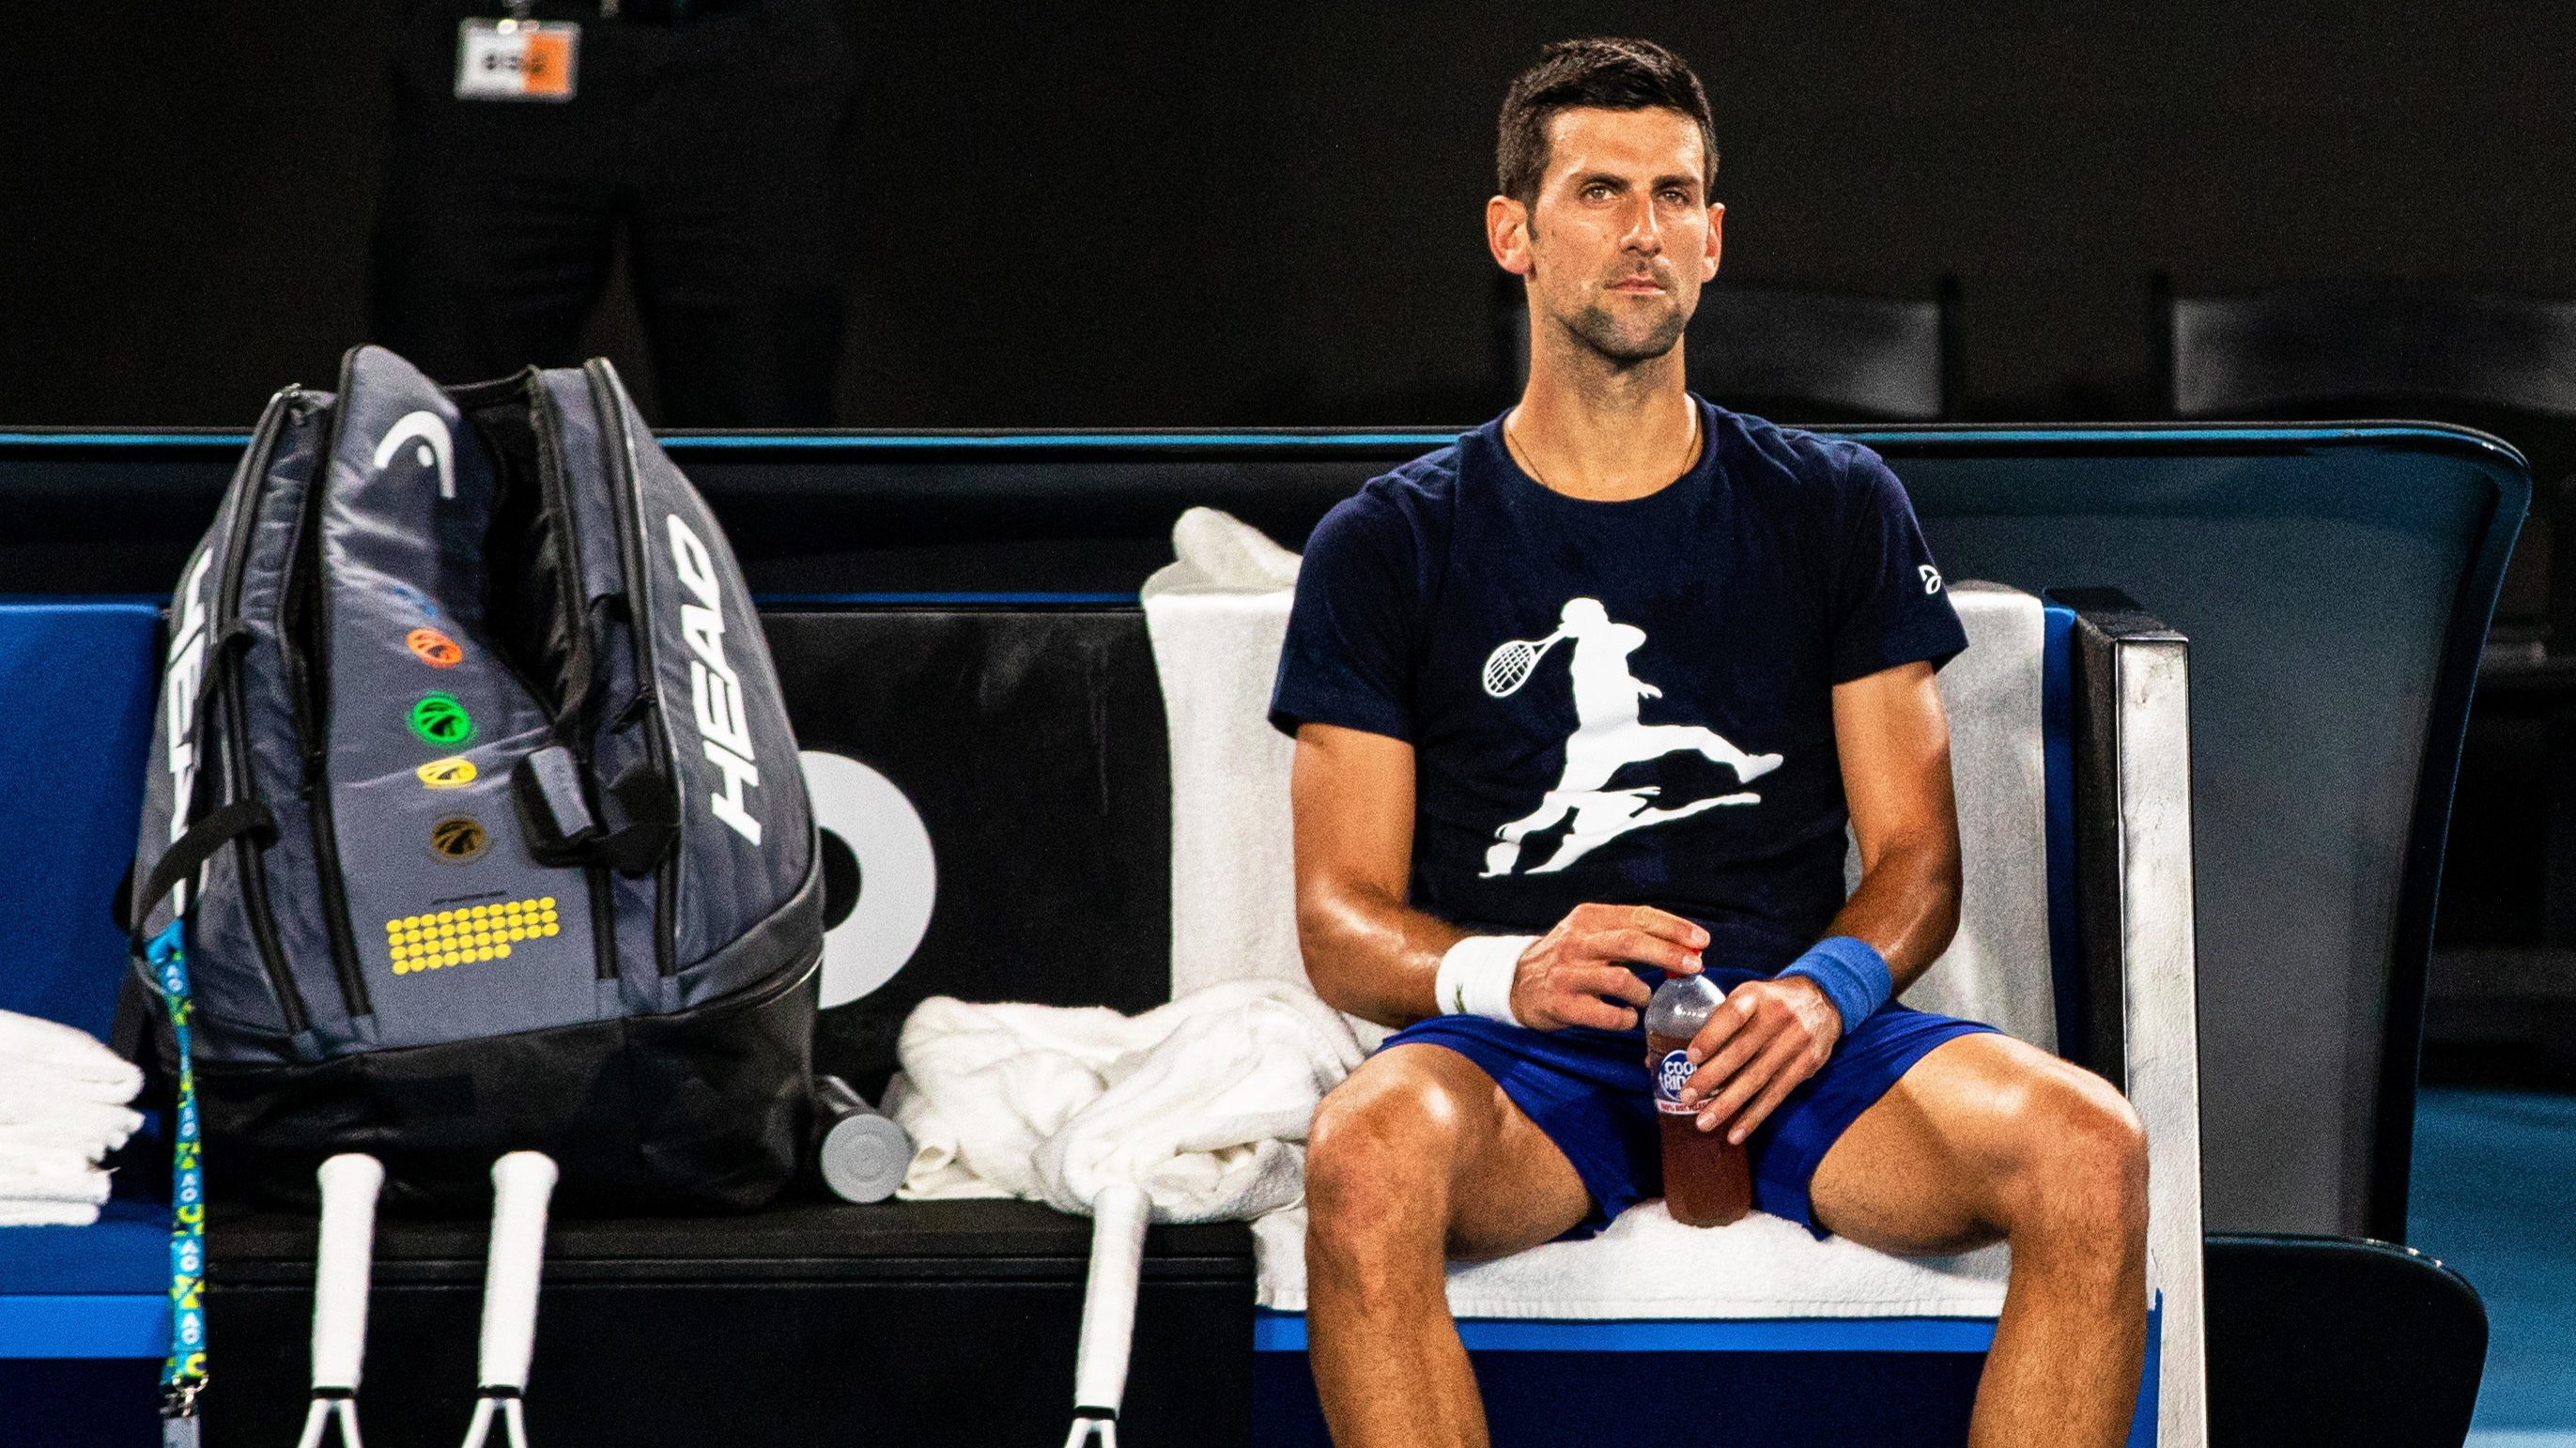 Őrizetbe vették Djokovicot, az Australian Open rajtja előtti órákban dönthetnek sorsáról